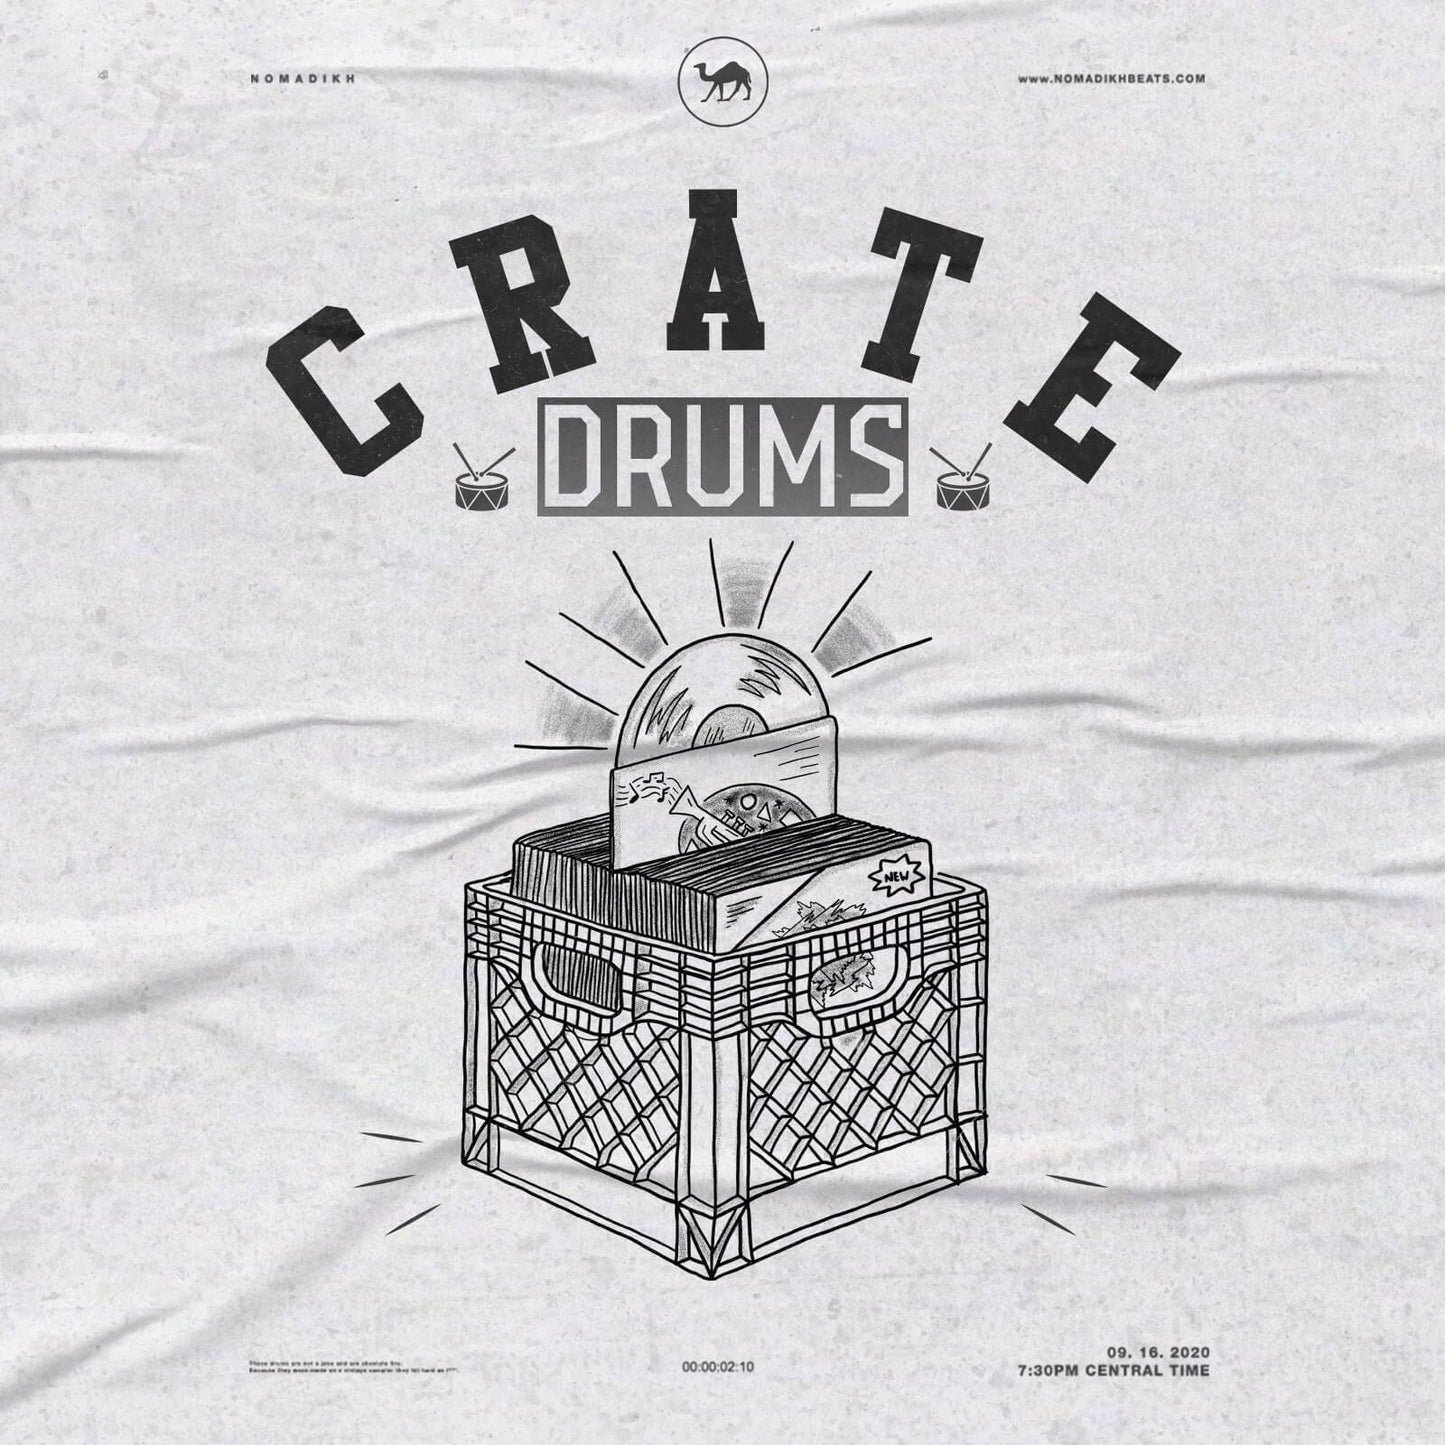 CRATE DRUMS - Drum Kit